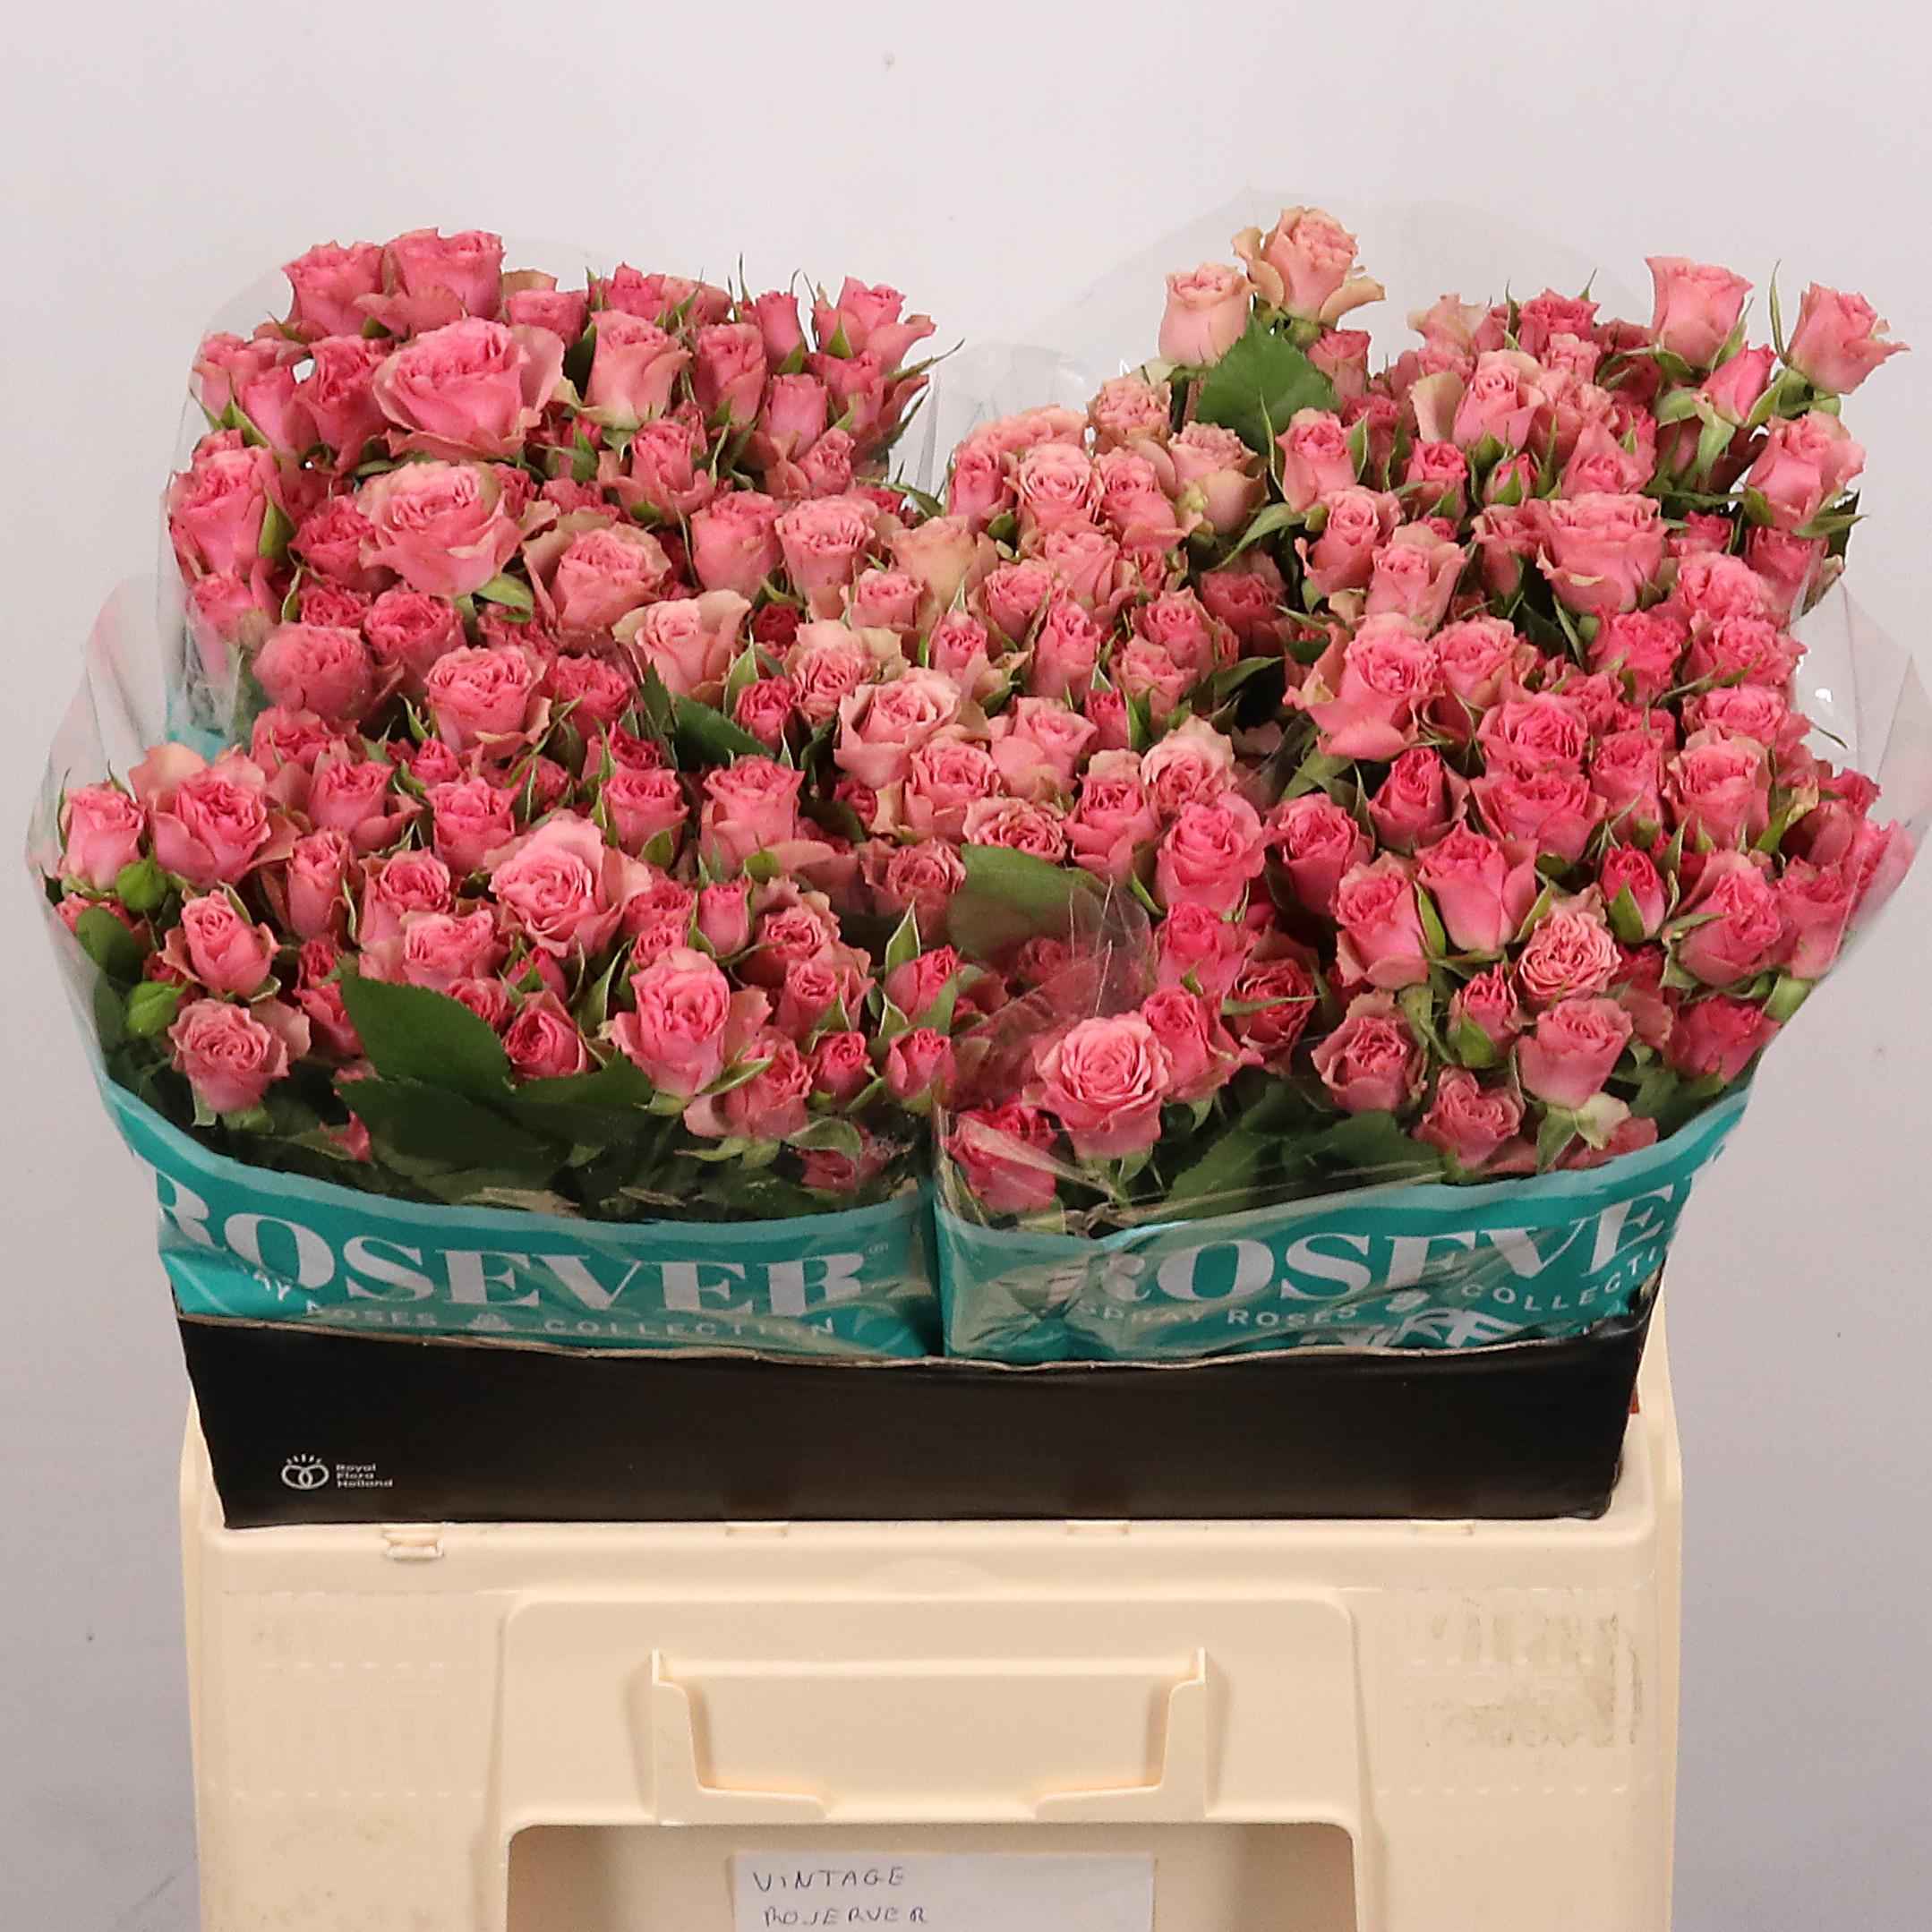 Срезанные цветы оптом Rosa sp vintage rosever от 40шт из Голландии с доставкой по России